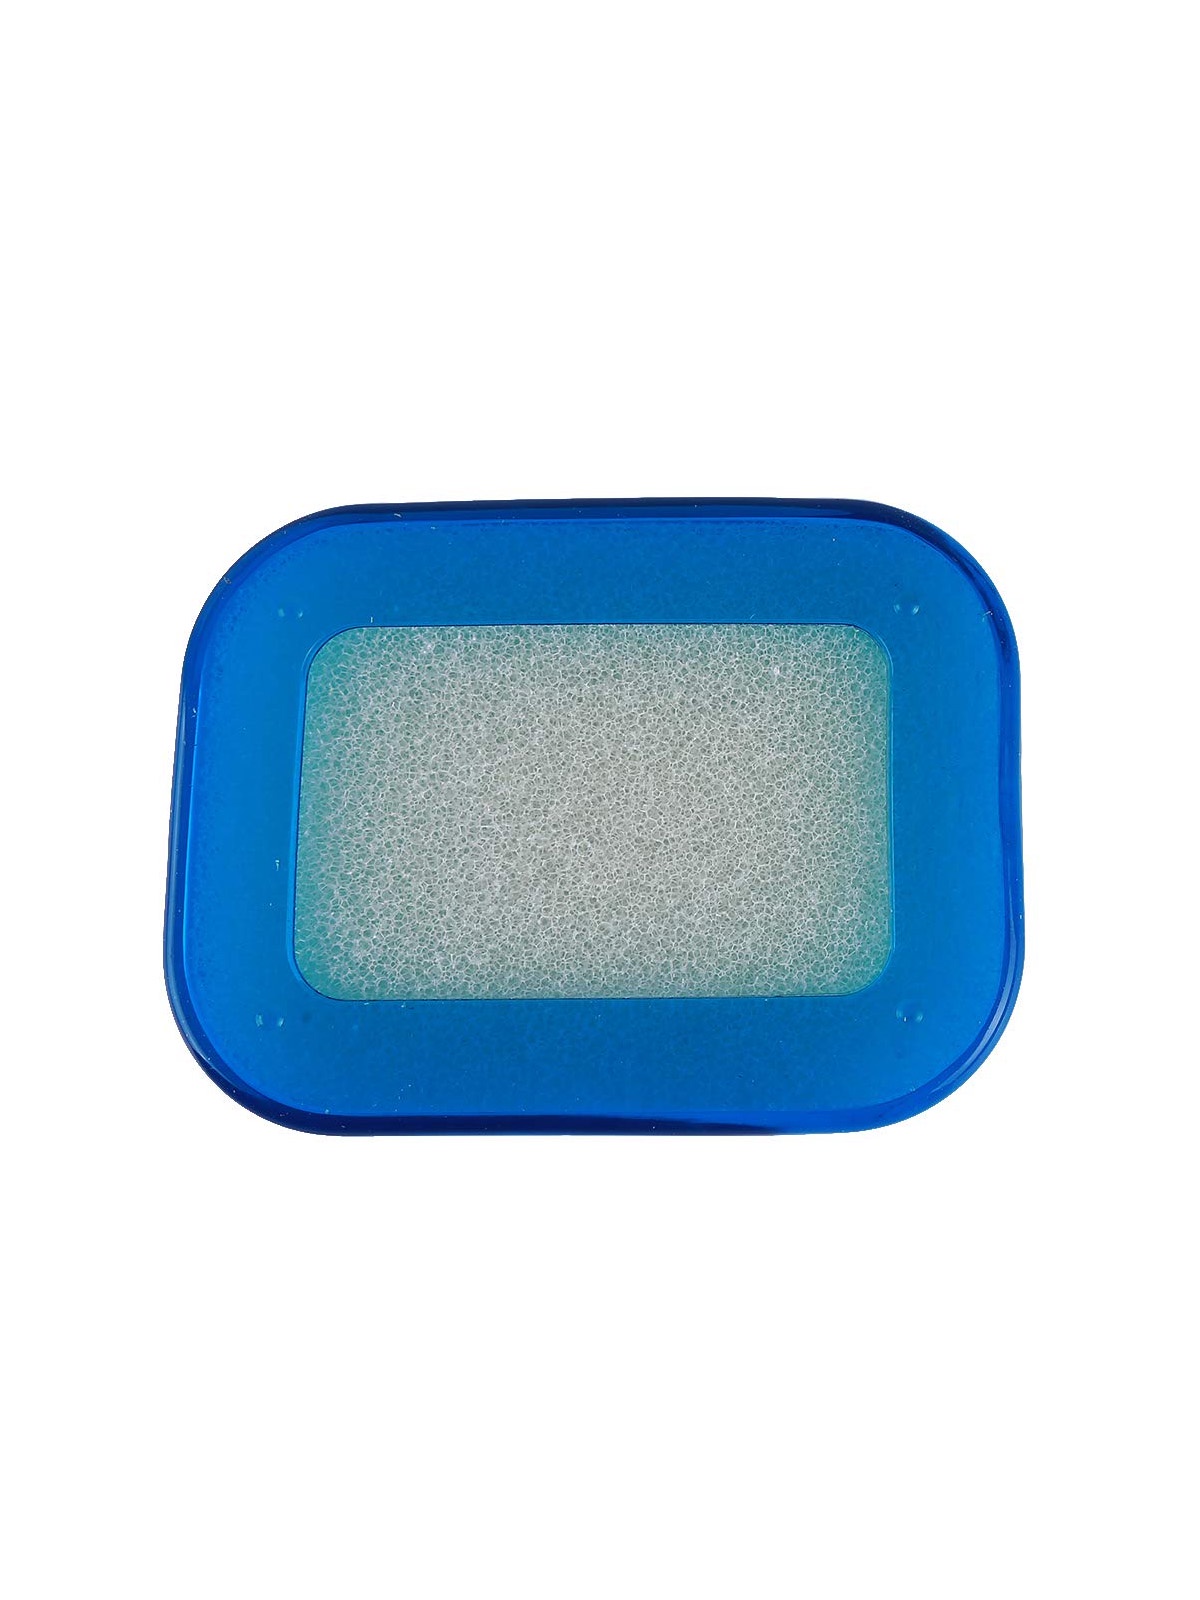 фото Мультифункциональная губка мыльница в пластиковой коробке, мыльница с губкой поролоновой (син.) Blonder home